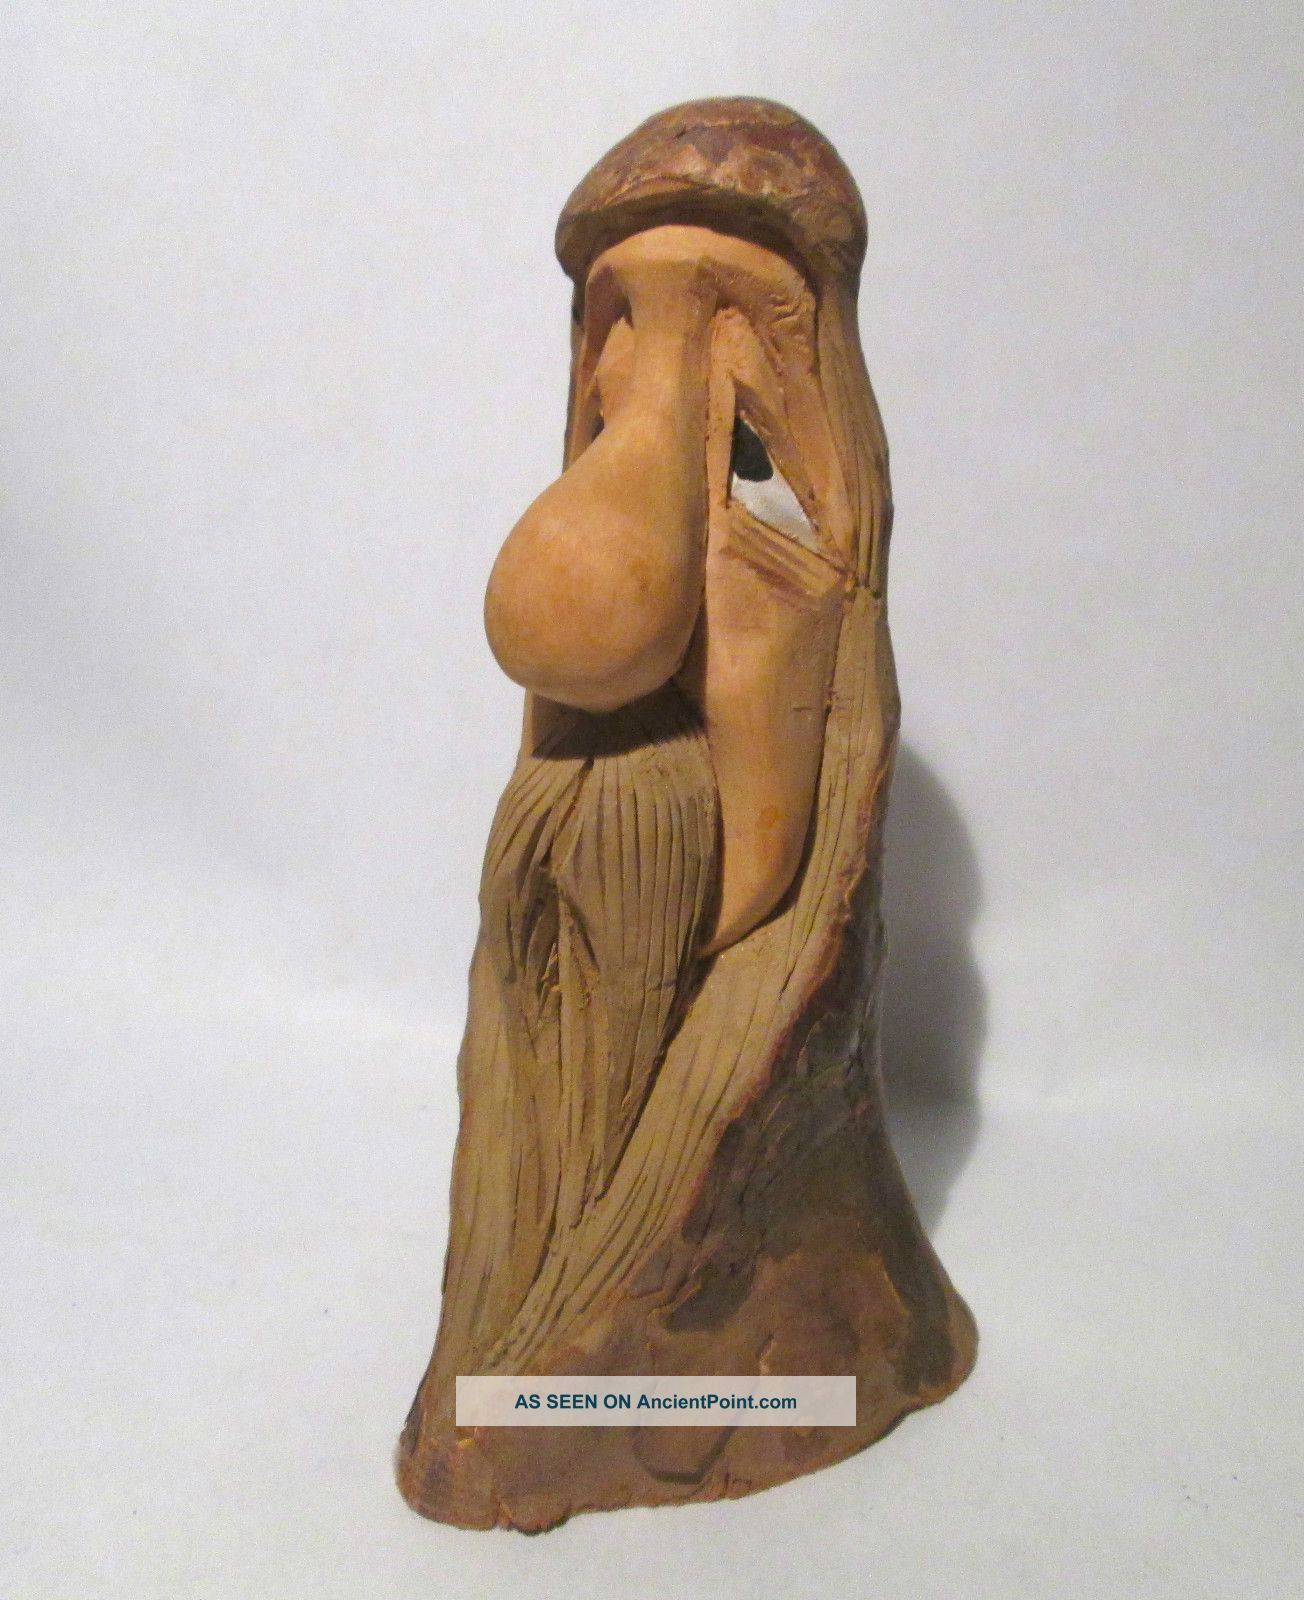 Vintage Signed Hand Carved Painted Wood Figure Sculpture Folk Art ...